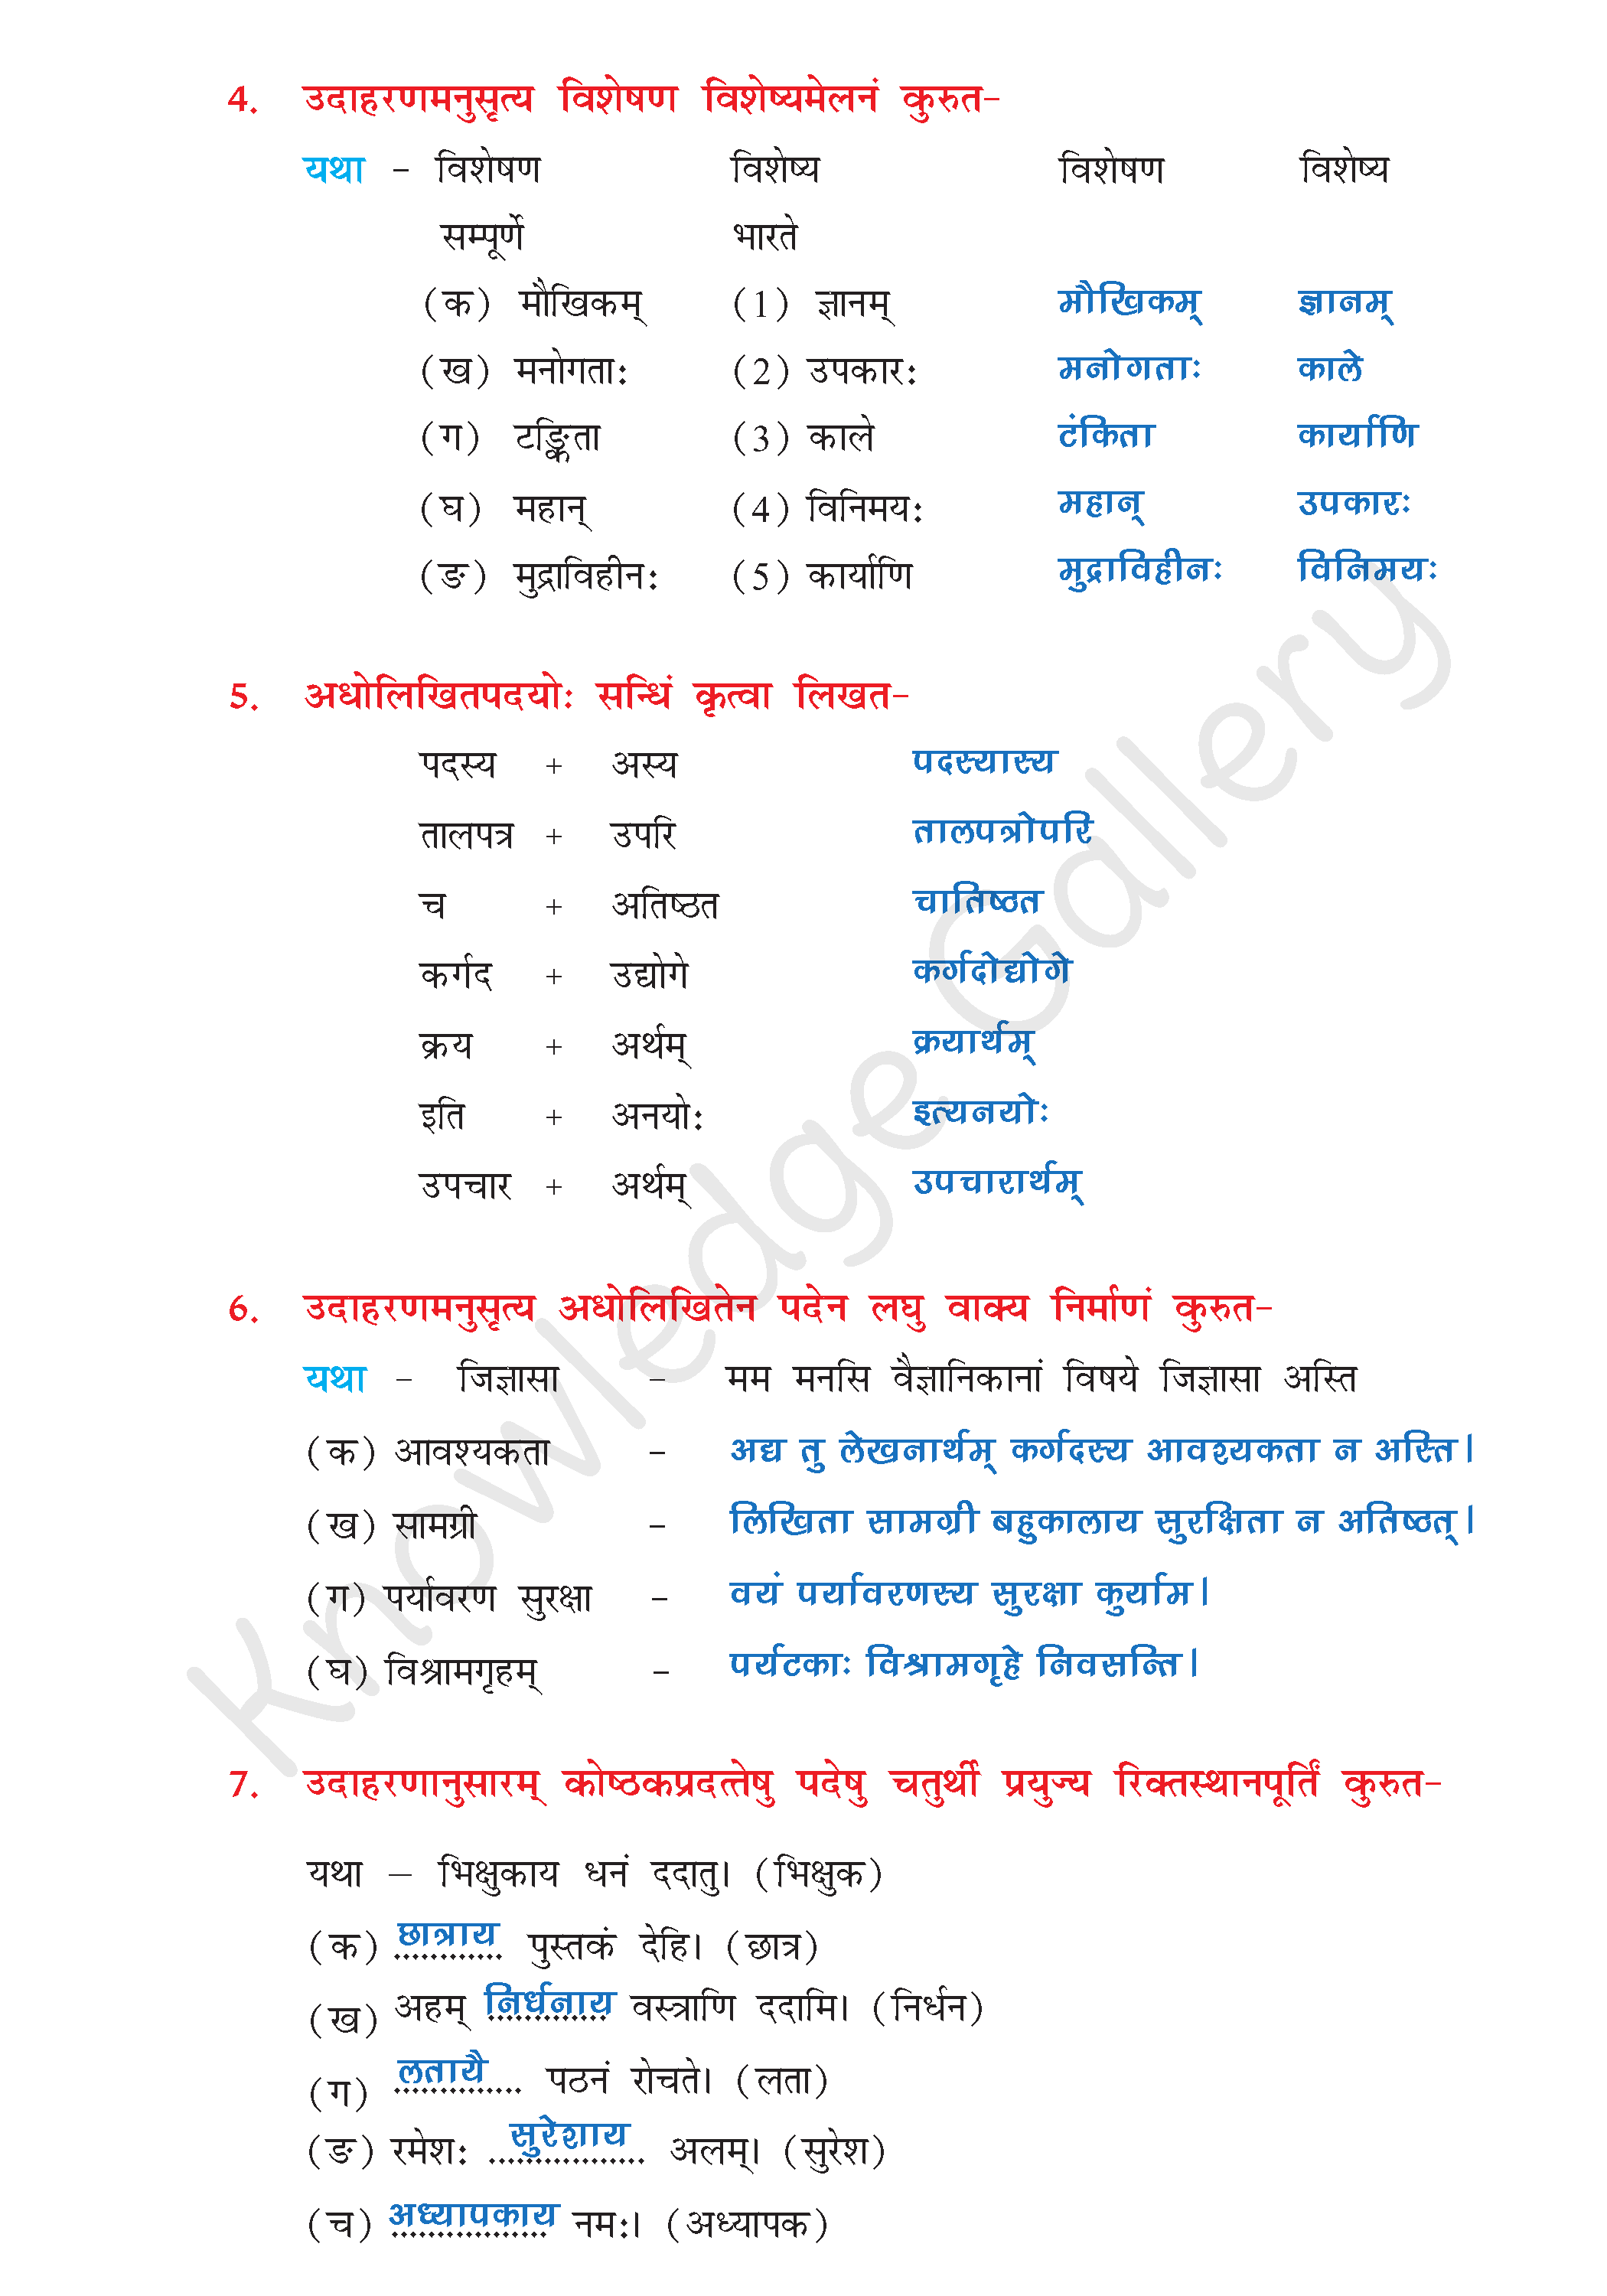 NCERT Solution For Class 8 Sanskrit Chapter 3 part 5